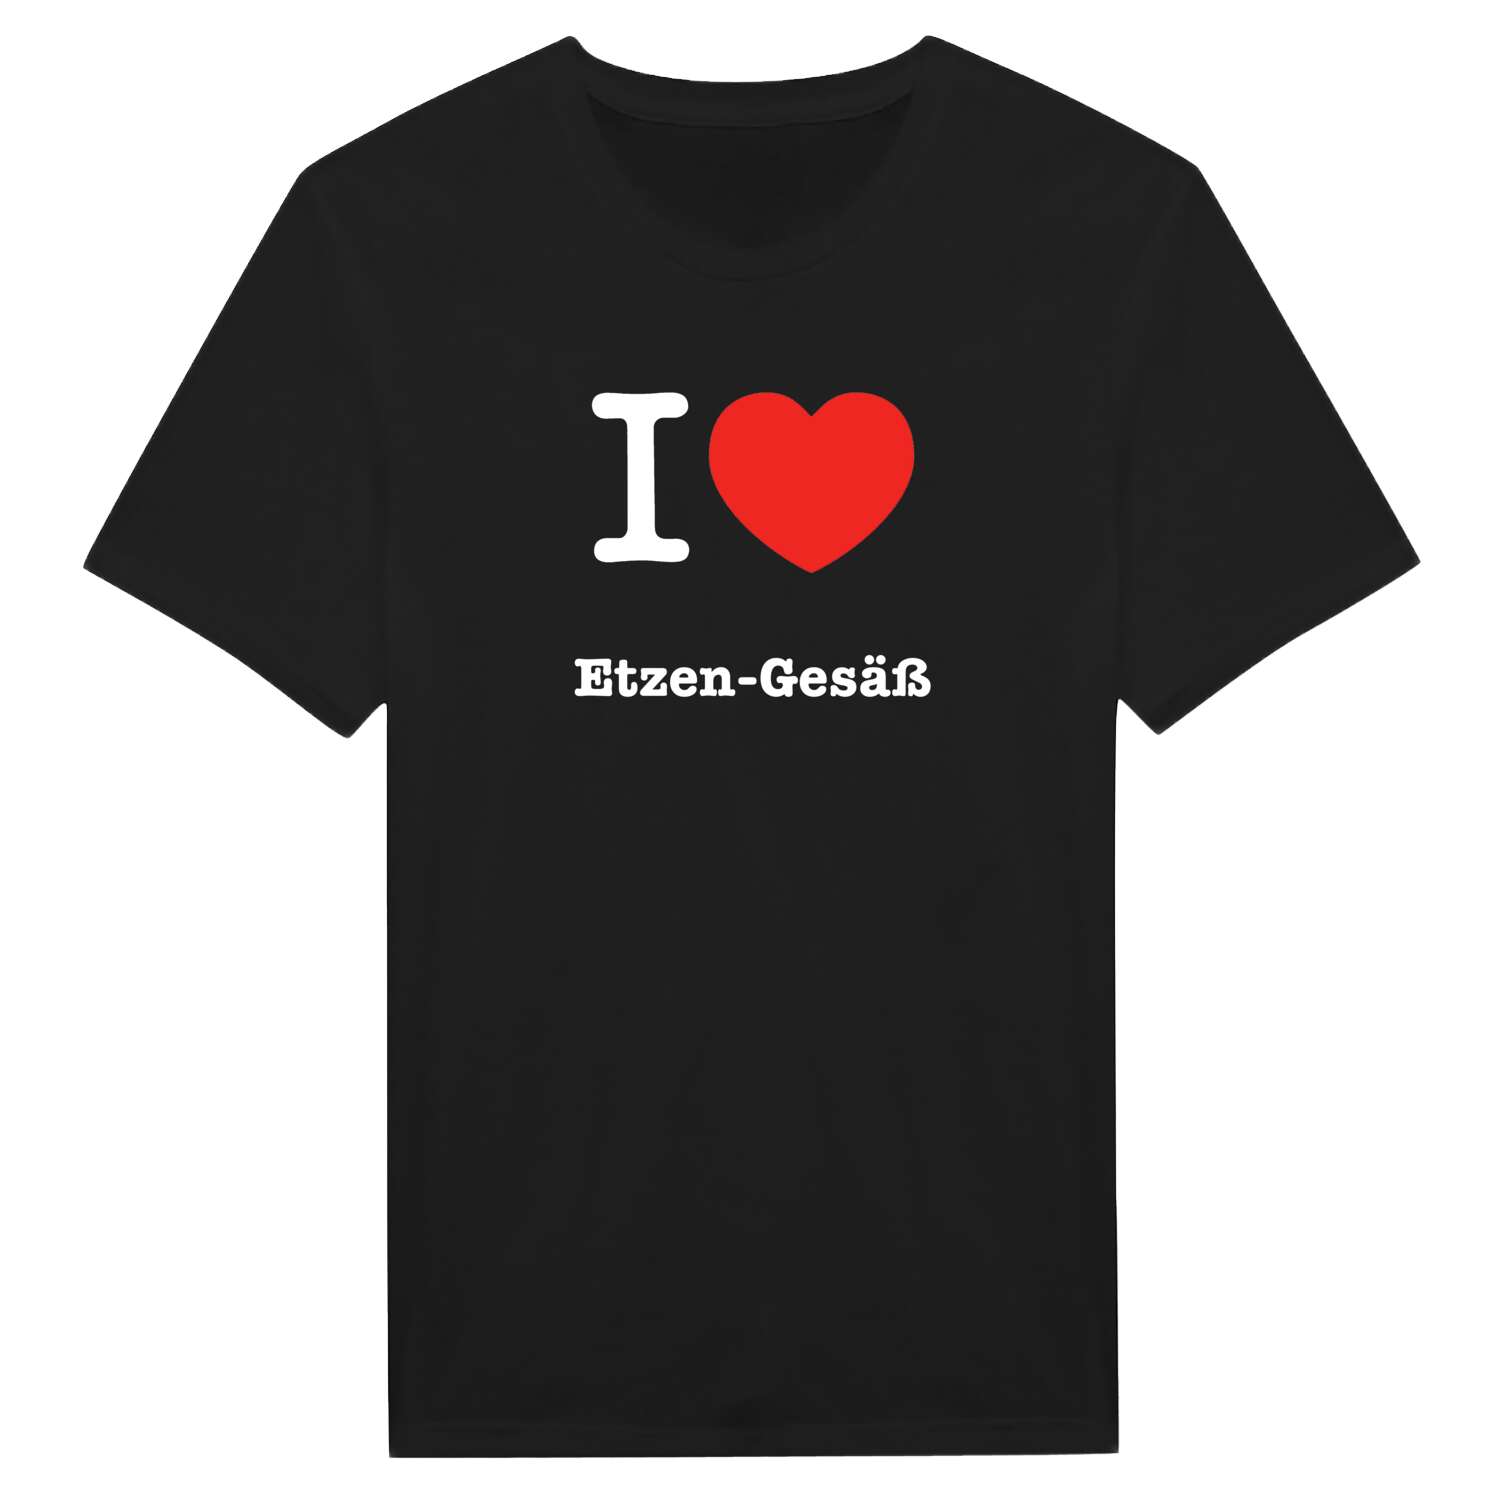 Etzen-Gesäß T-Shirt »I love«